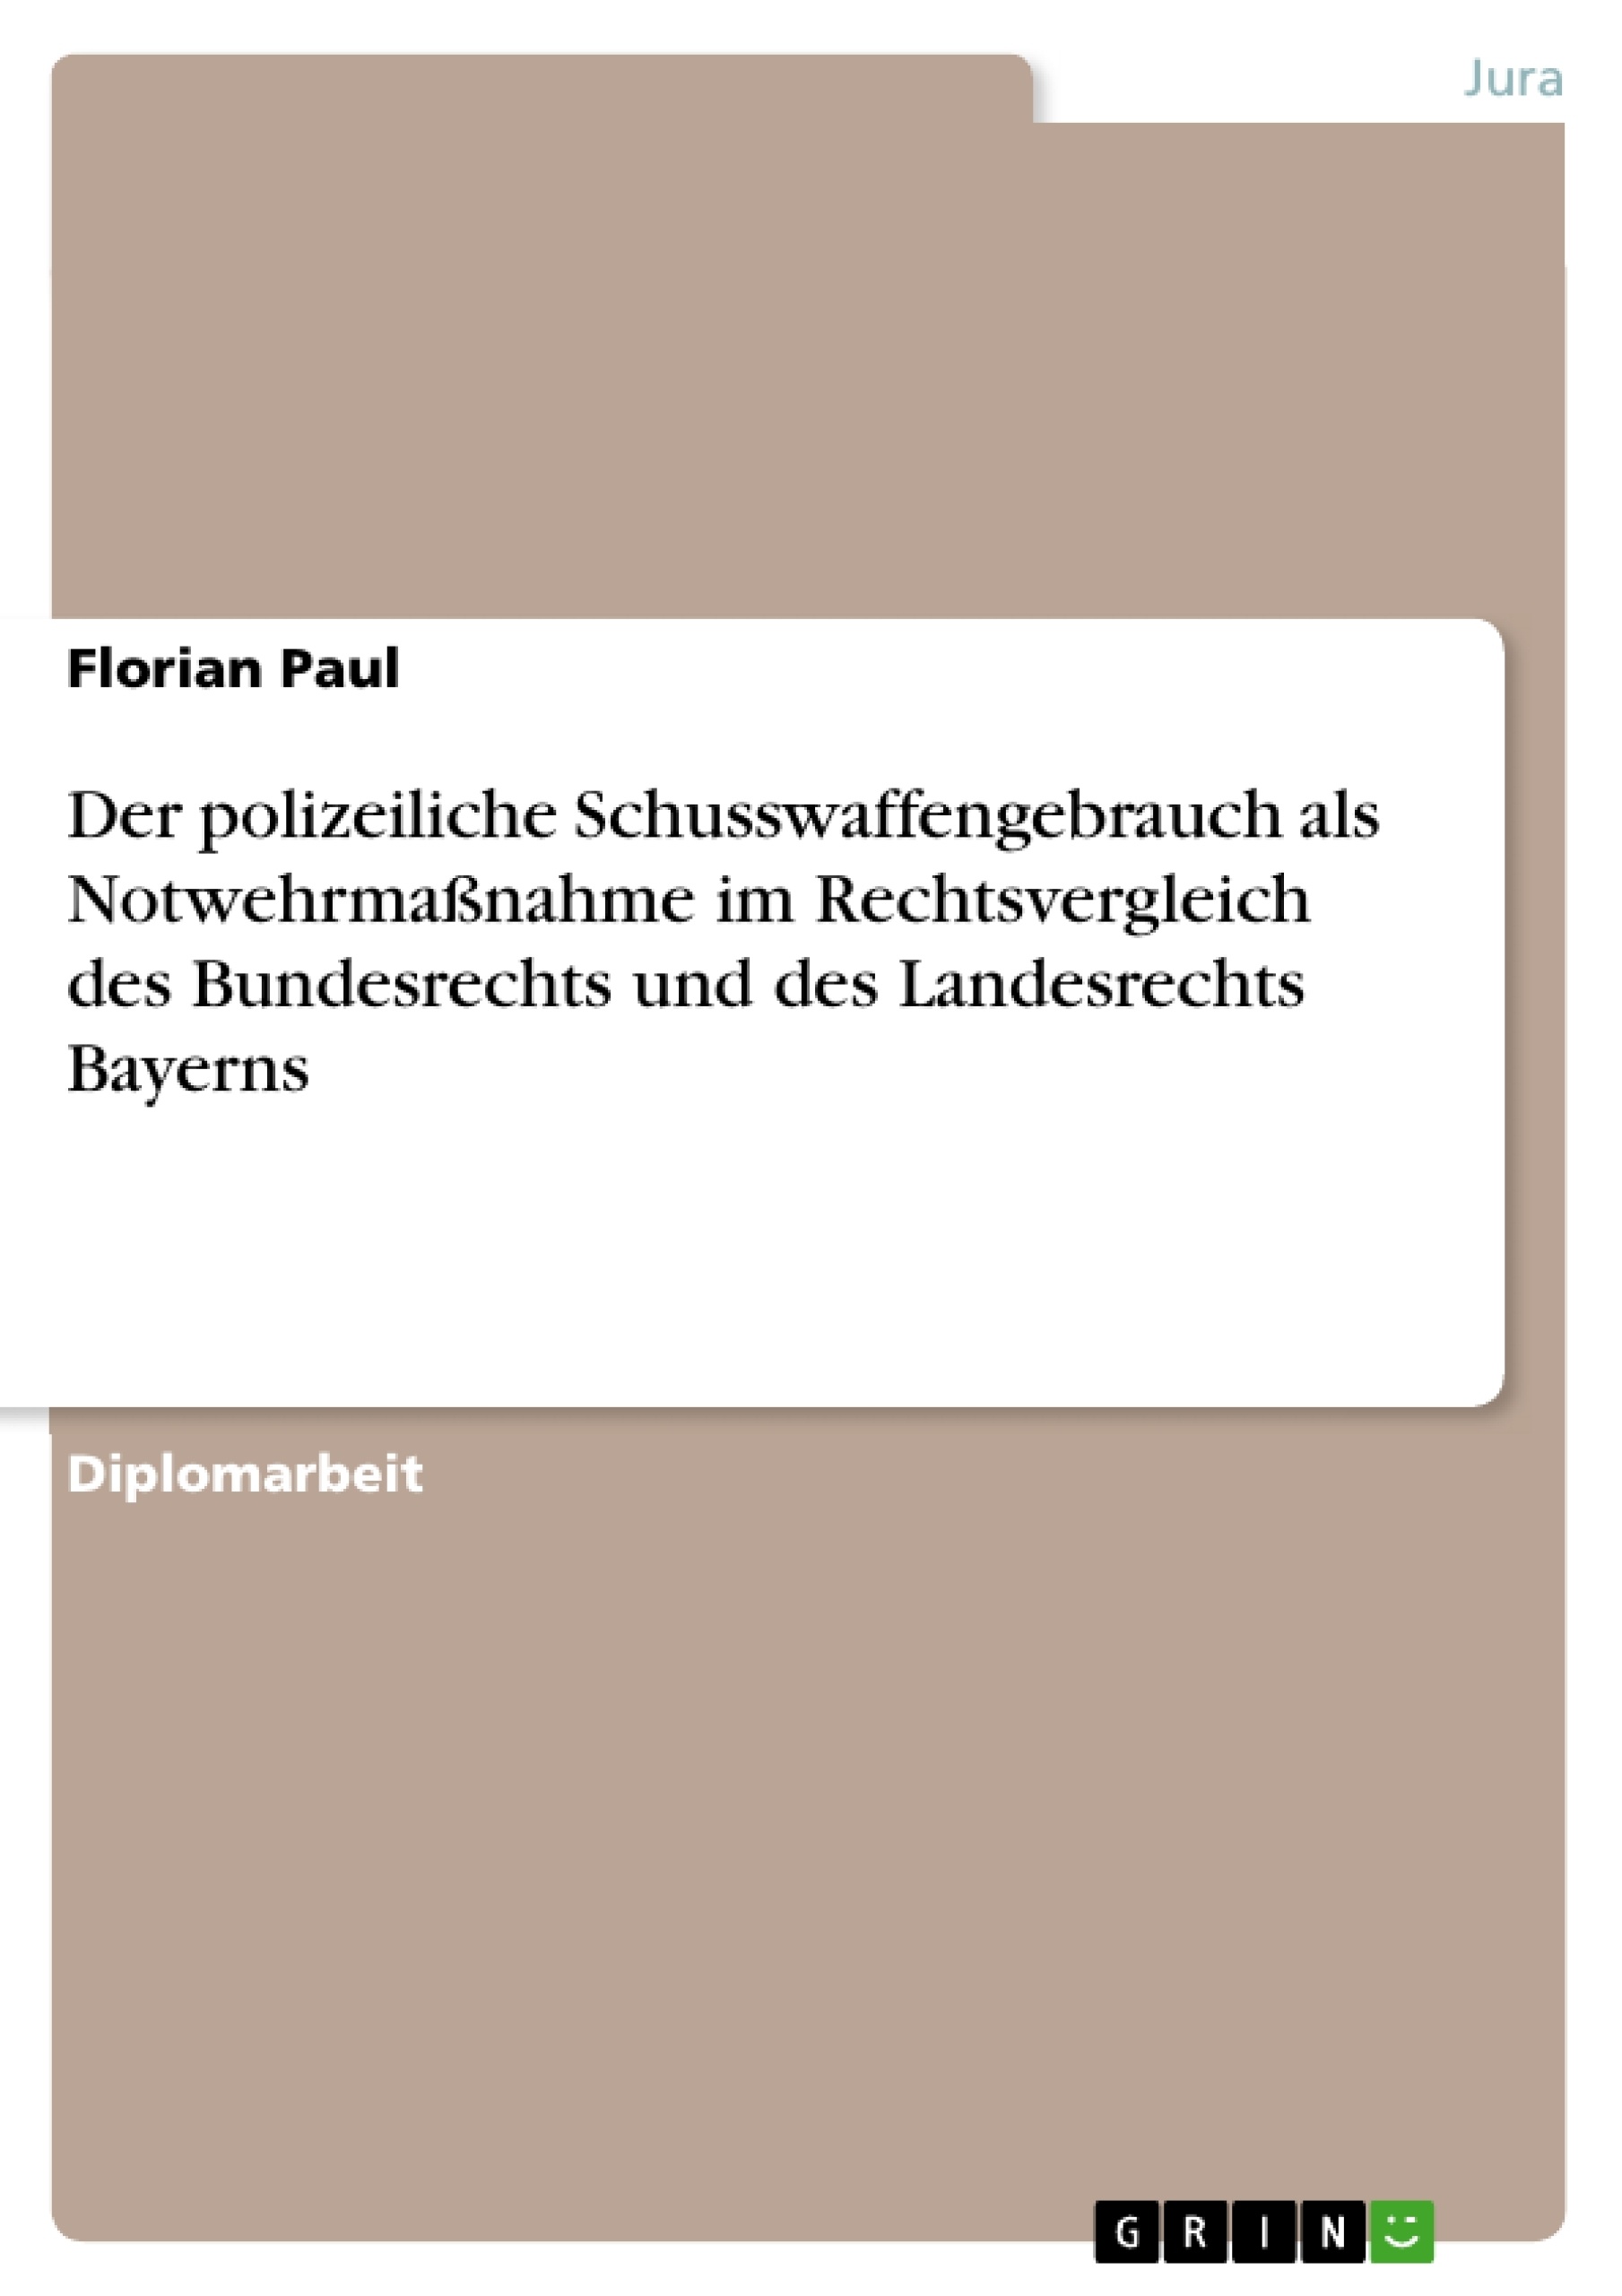 Título: Der polizeiliche Schusswaffengebrauch als Notwehrmaßnahme im Rechtsvergleich des Bundesrechts und des Landesrechts Bayerns